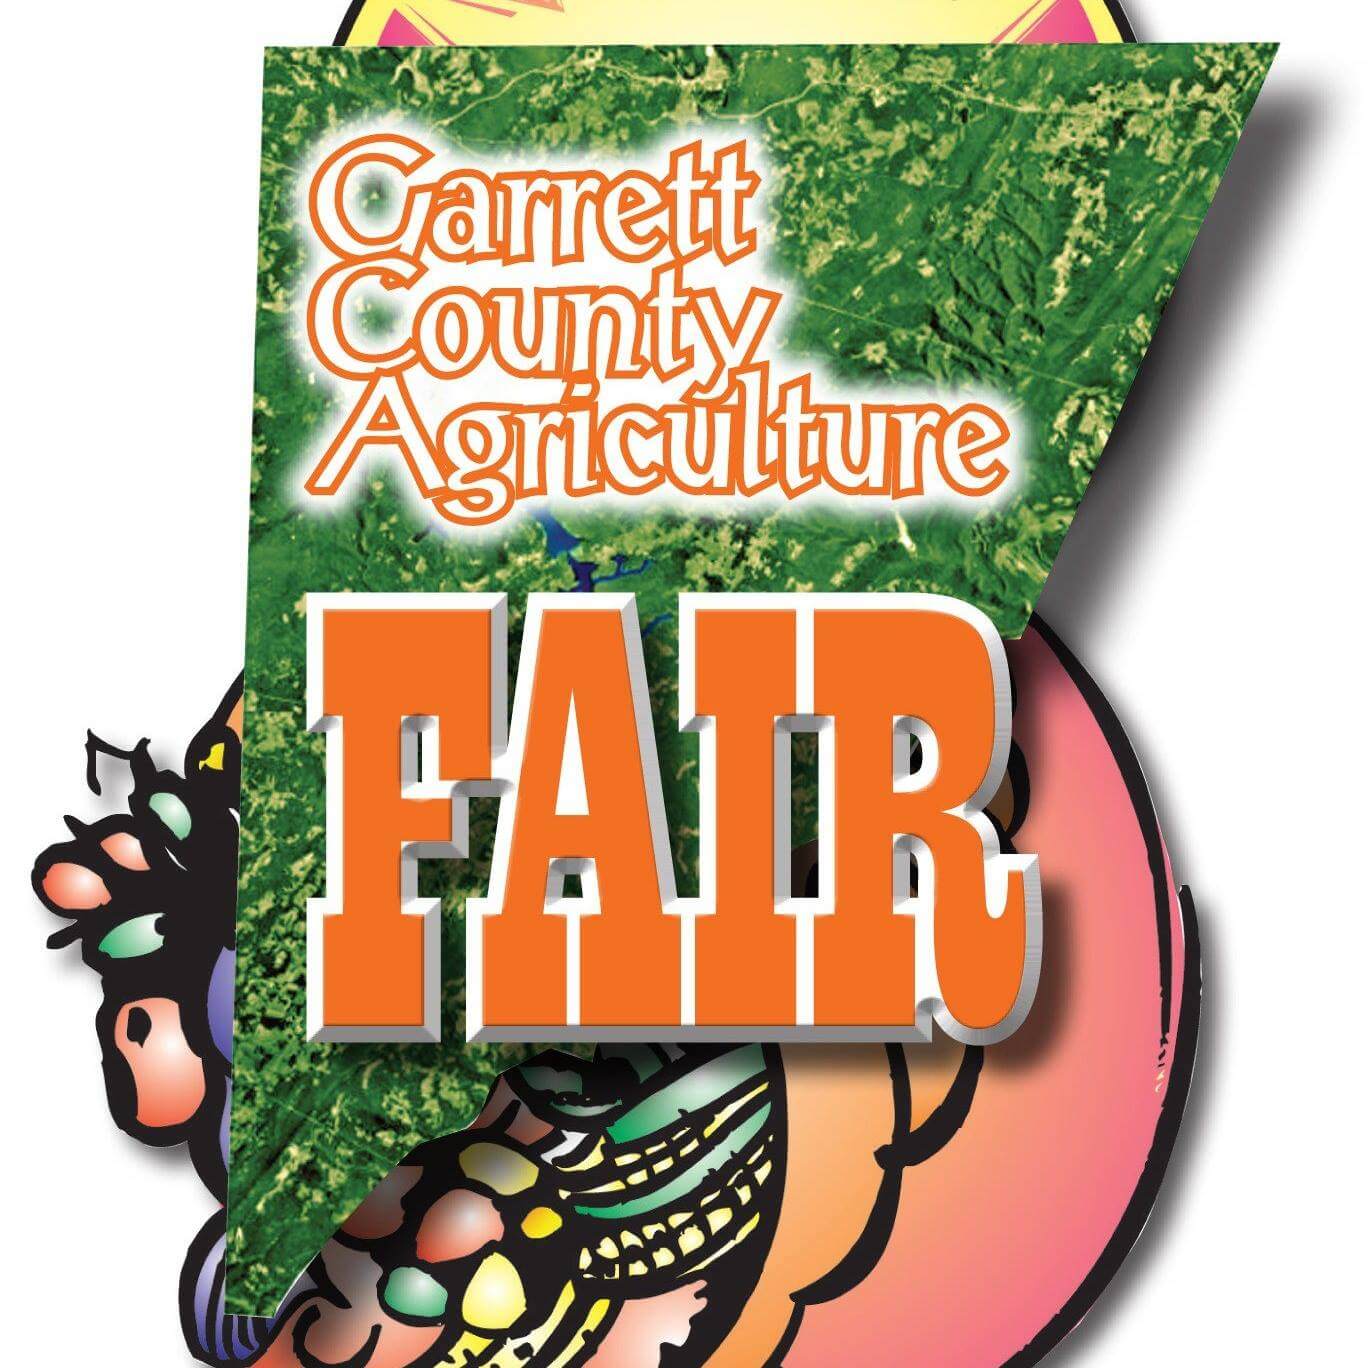 67th Annual Garrett County Agriculture Fair at Deep Creek Lake, MD